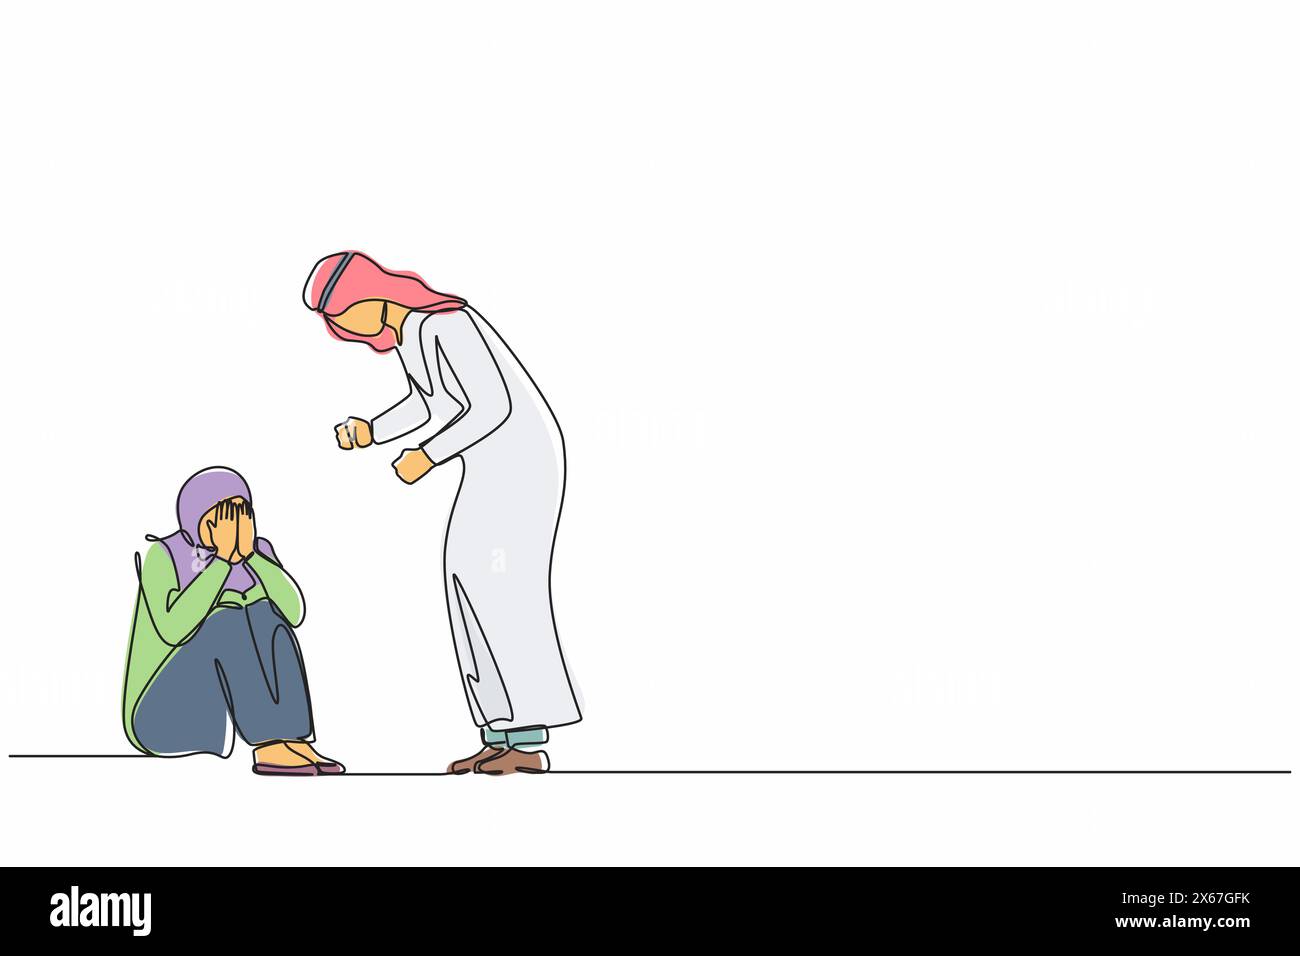 Durchgehende Linie, die verängstigte arabische Frau, Angst vor Ehemann, häuslicher Gewalt, zeichnet. Mann schlägt Ehefrau, streitendes Paar. Emotionale Persönlichkeiten streiten Stock Vektor